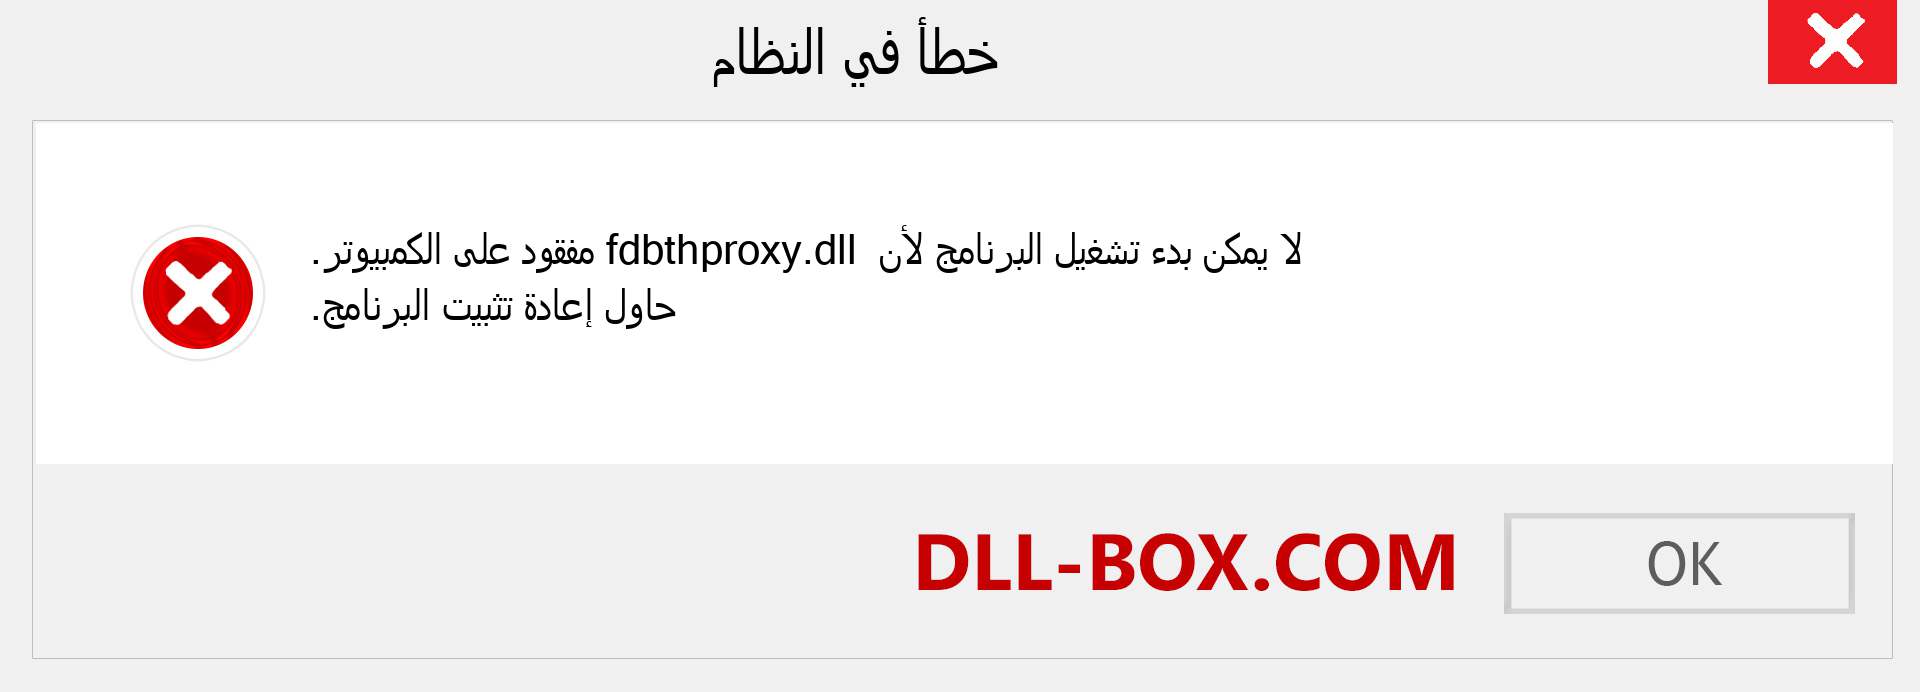 ملف fdbthproxy.dll مفقود ؟. التنزيل لنظام التشغيل Windows 7 و 8 و 10 - إصلاح خطأ fdbthproxy dll المفقود على Windows والصور والصور